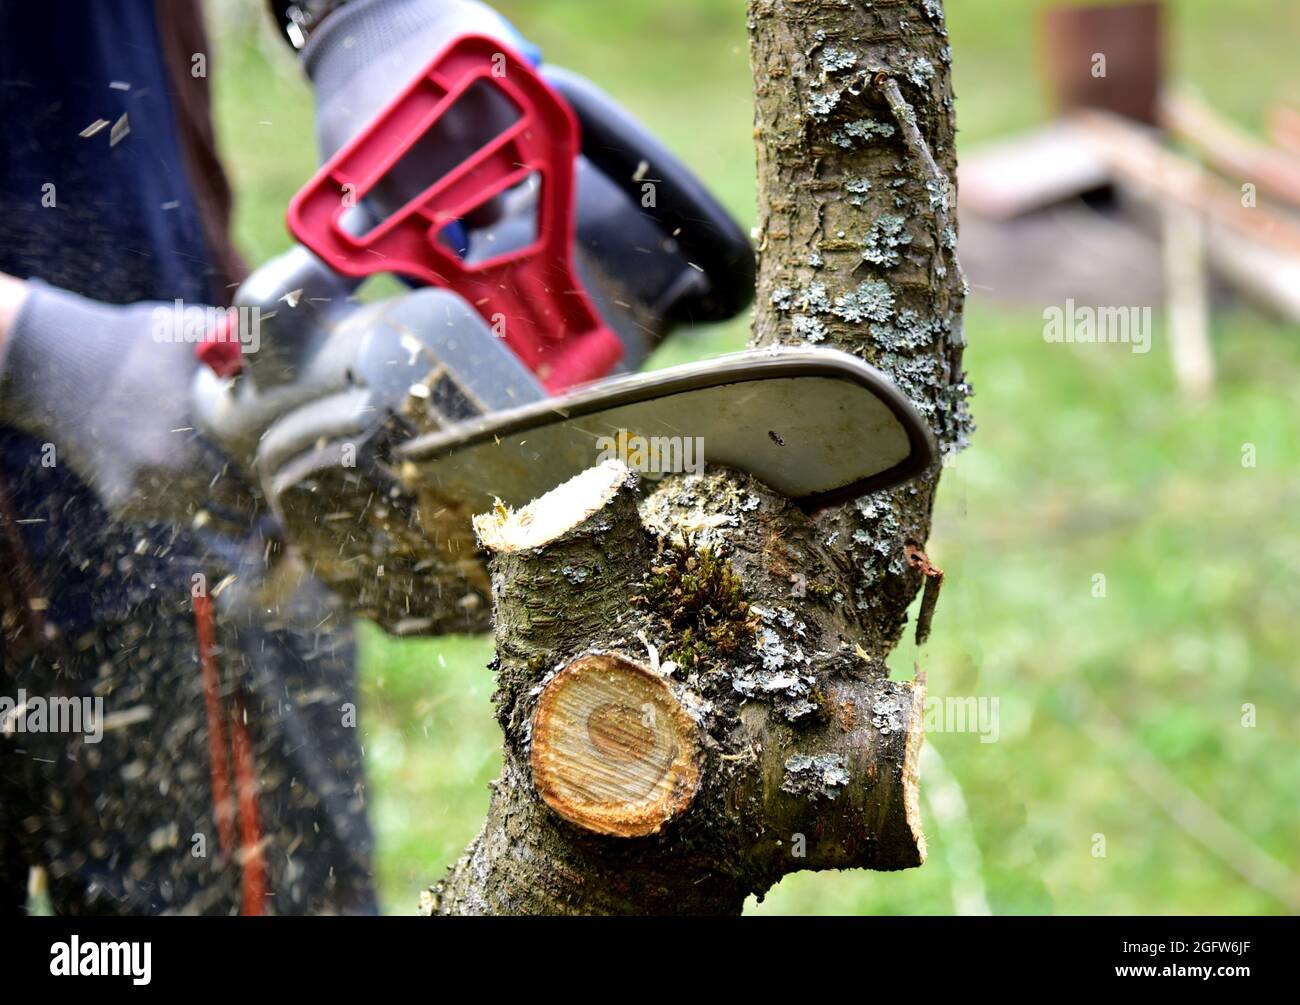 Der professionelle Gärtner schneidet Äste auf einem alten Baum mit einer Kettensäge. Bäume mit Kettensäge im Hinterhof zu beschneiden. Brennholz im Dorf schneiden. Stockfoto